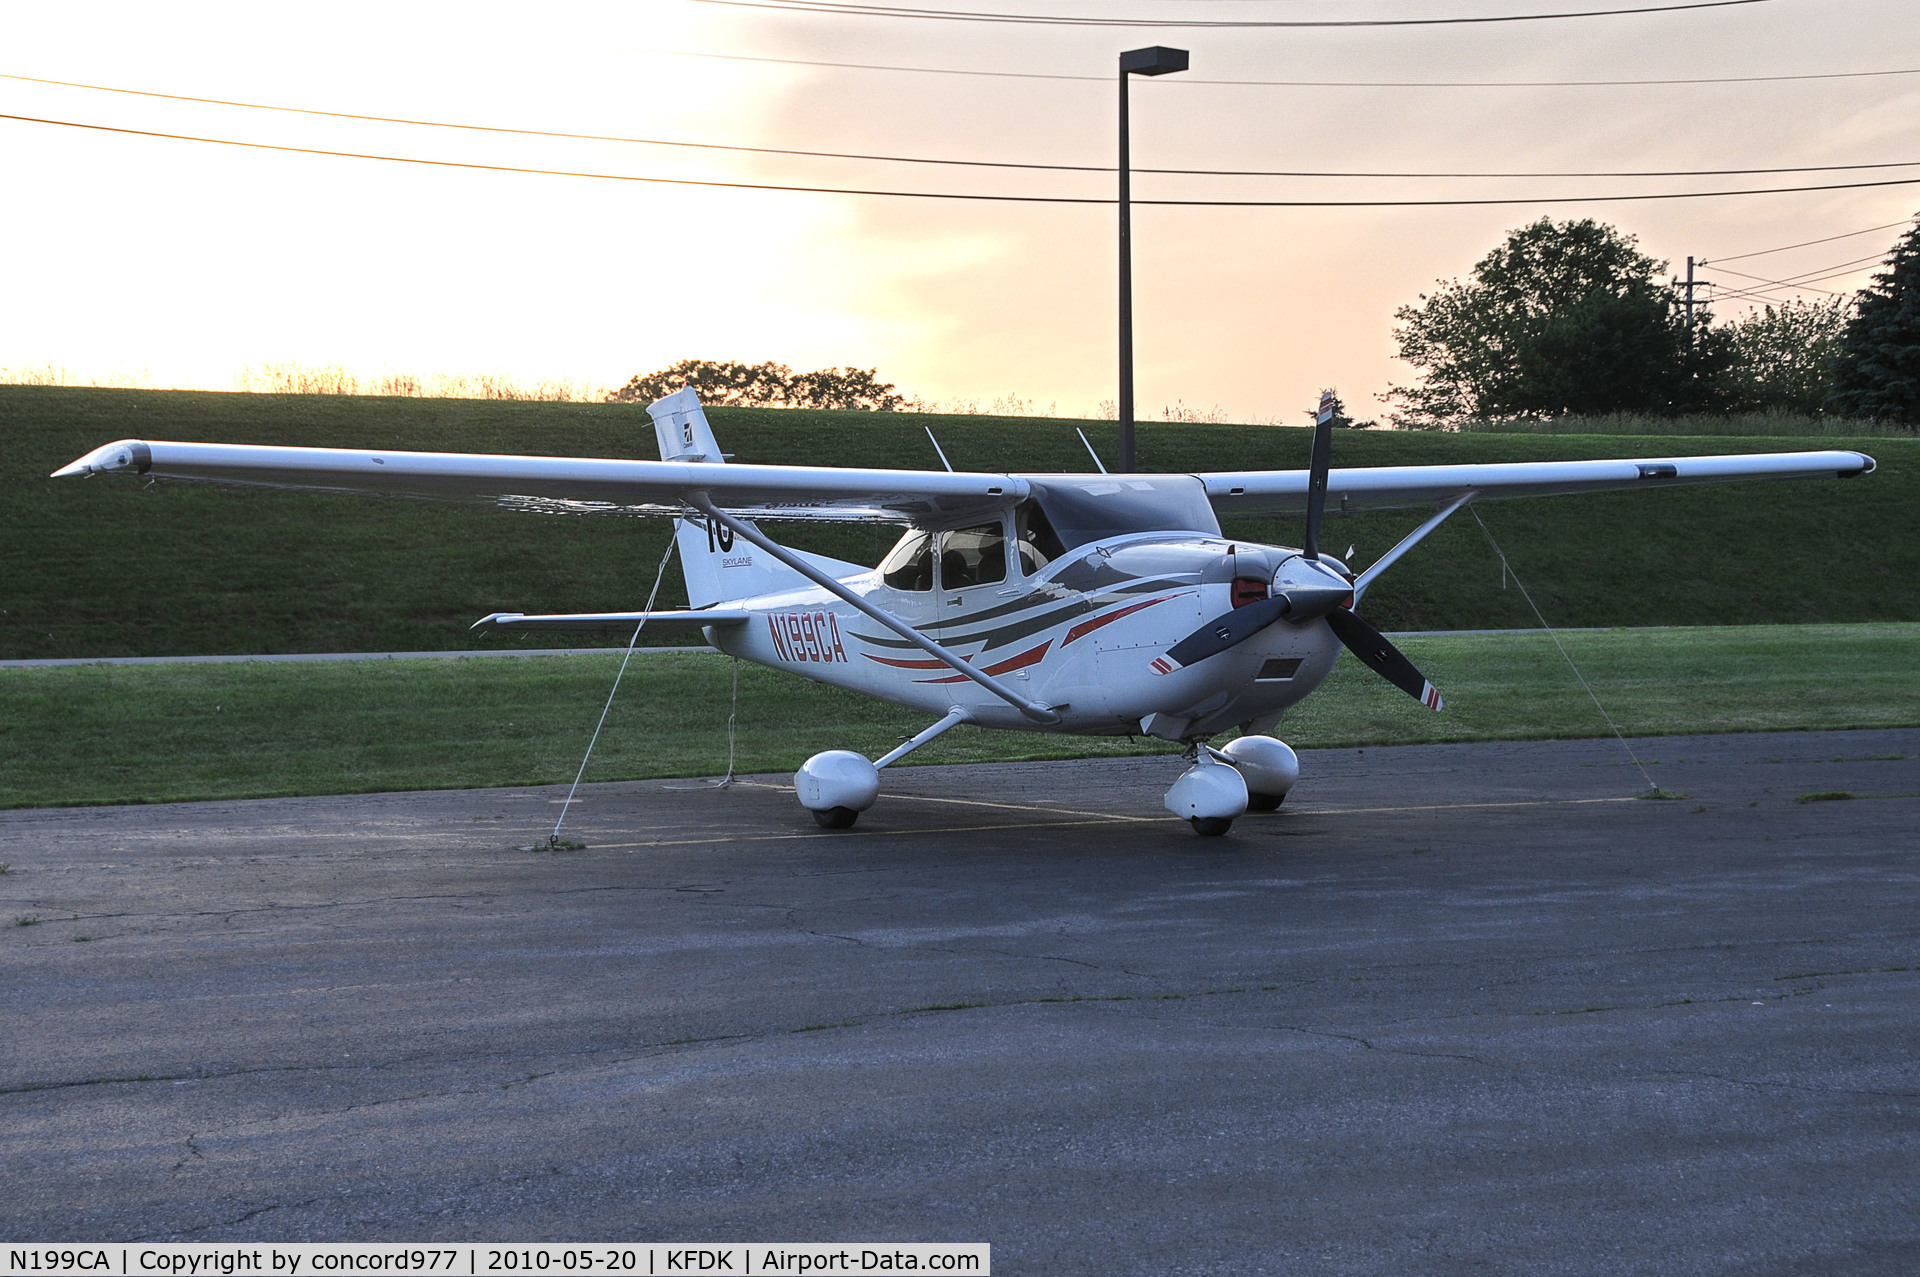 N199CA, 2005 Cessna 182T Skylane C/N 18281548, Seen at KFDK on 5/20/2010.